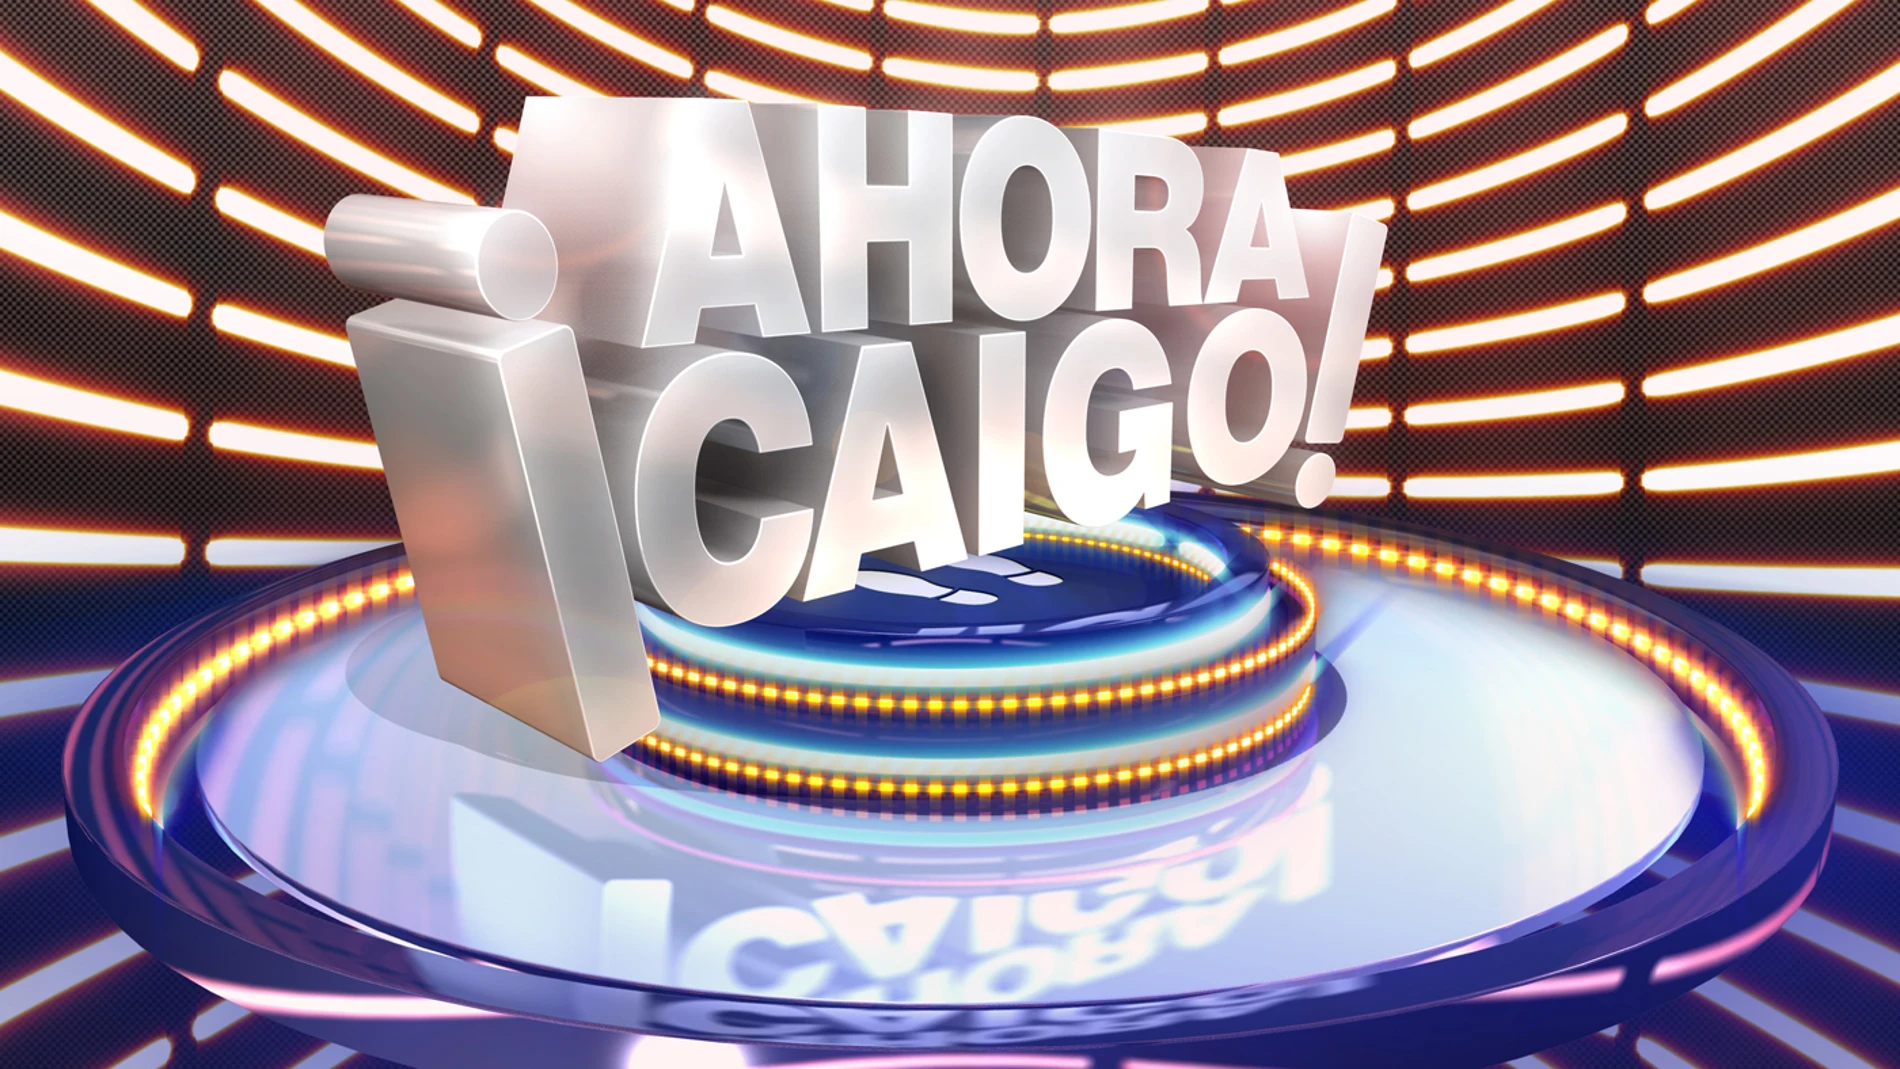 ¡Ahora Caigo!, el nuevo concurso de Antena 3